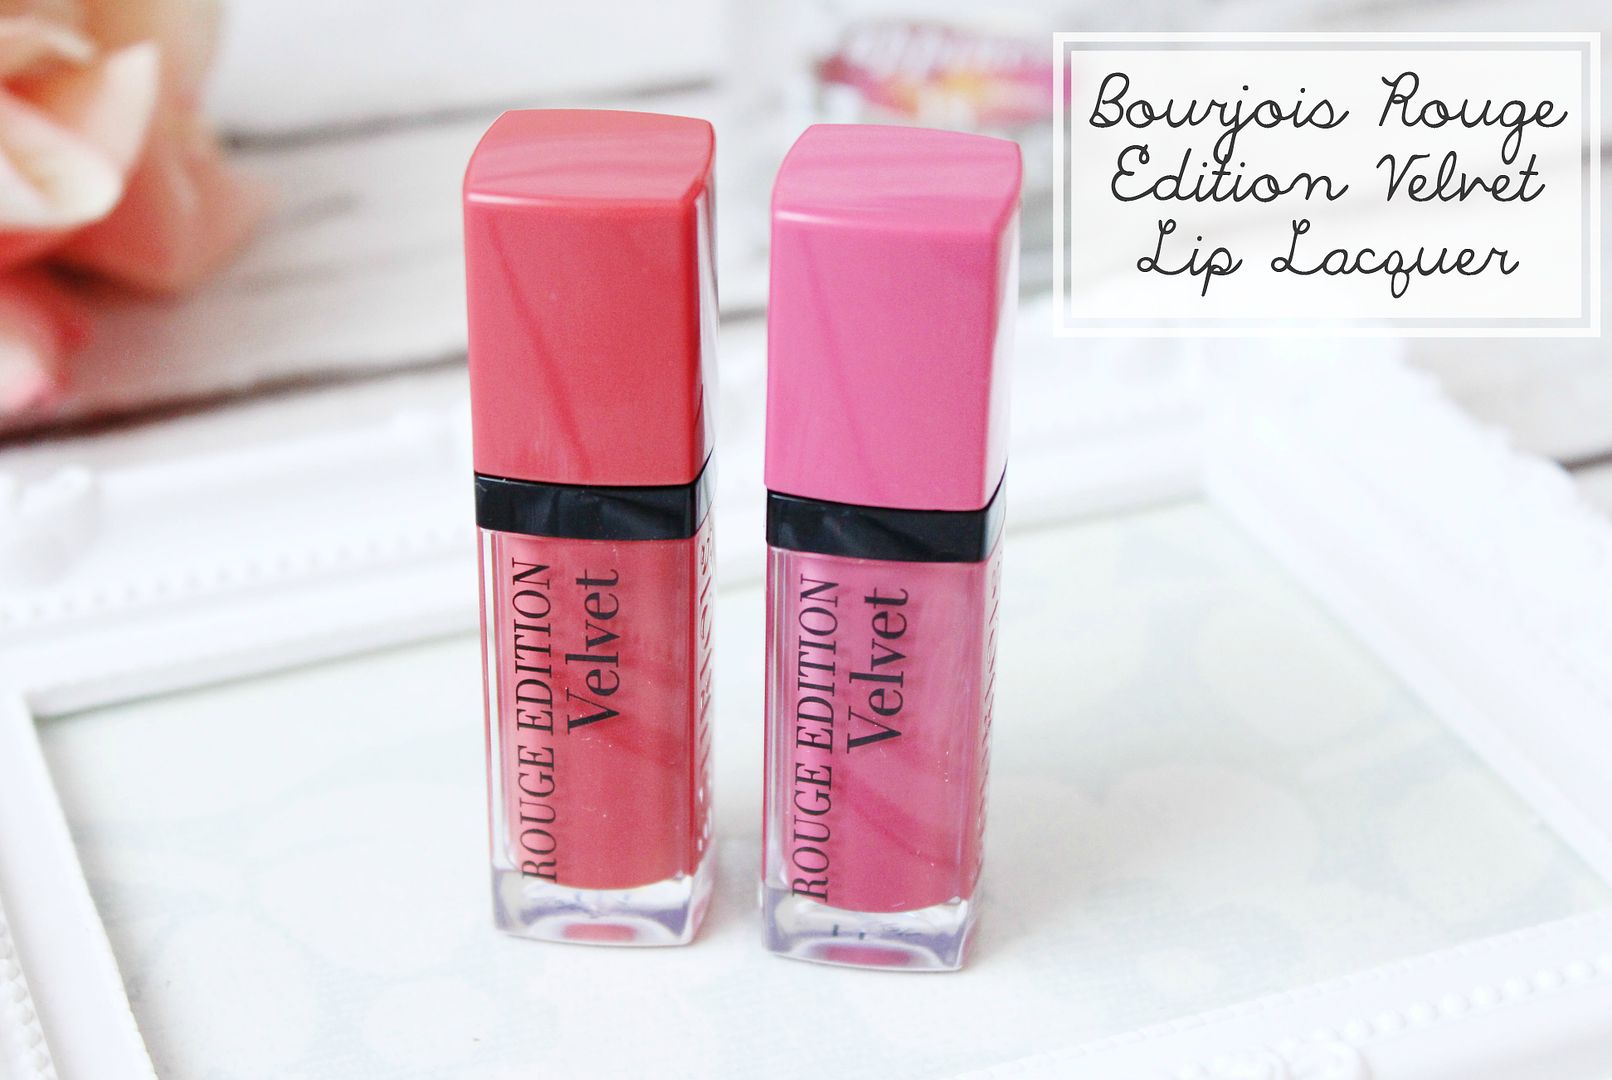 Bourjois-Rouge-Edition-Velvet-Lipstick-Lip-Lacquers-So-Hap'pink-Peach-Club-Belle-Amie-UK-Beauty-Fashion-Lifestyle-Blog